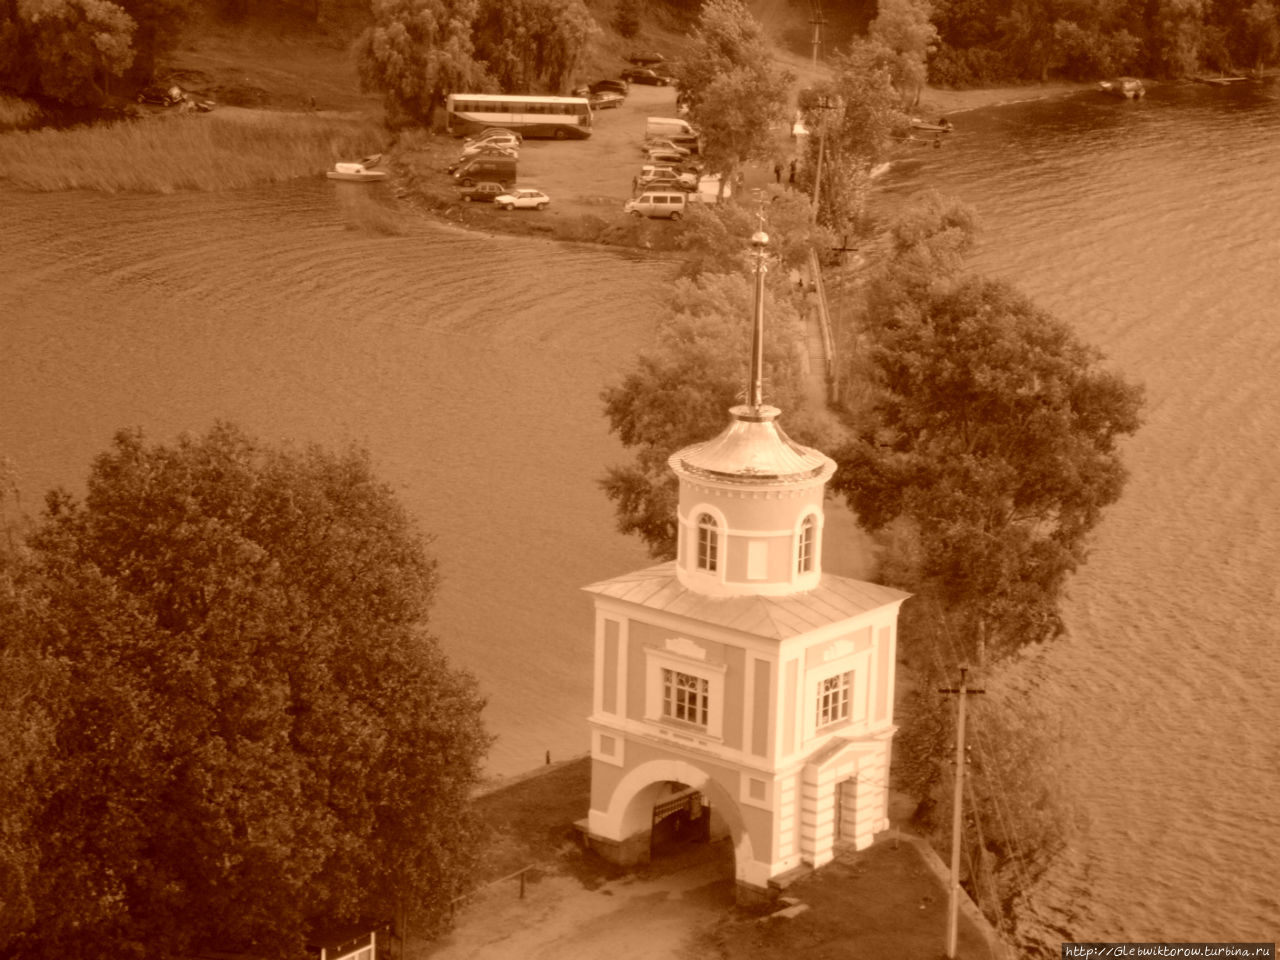 Виды с монастырской колокольни Осташков и Озеро Селигер, Россия